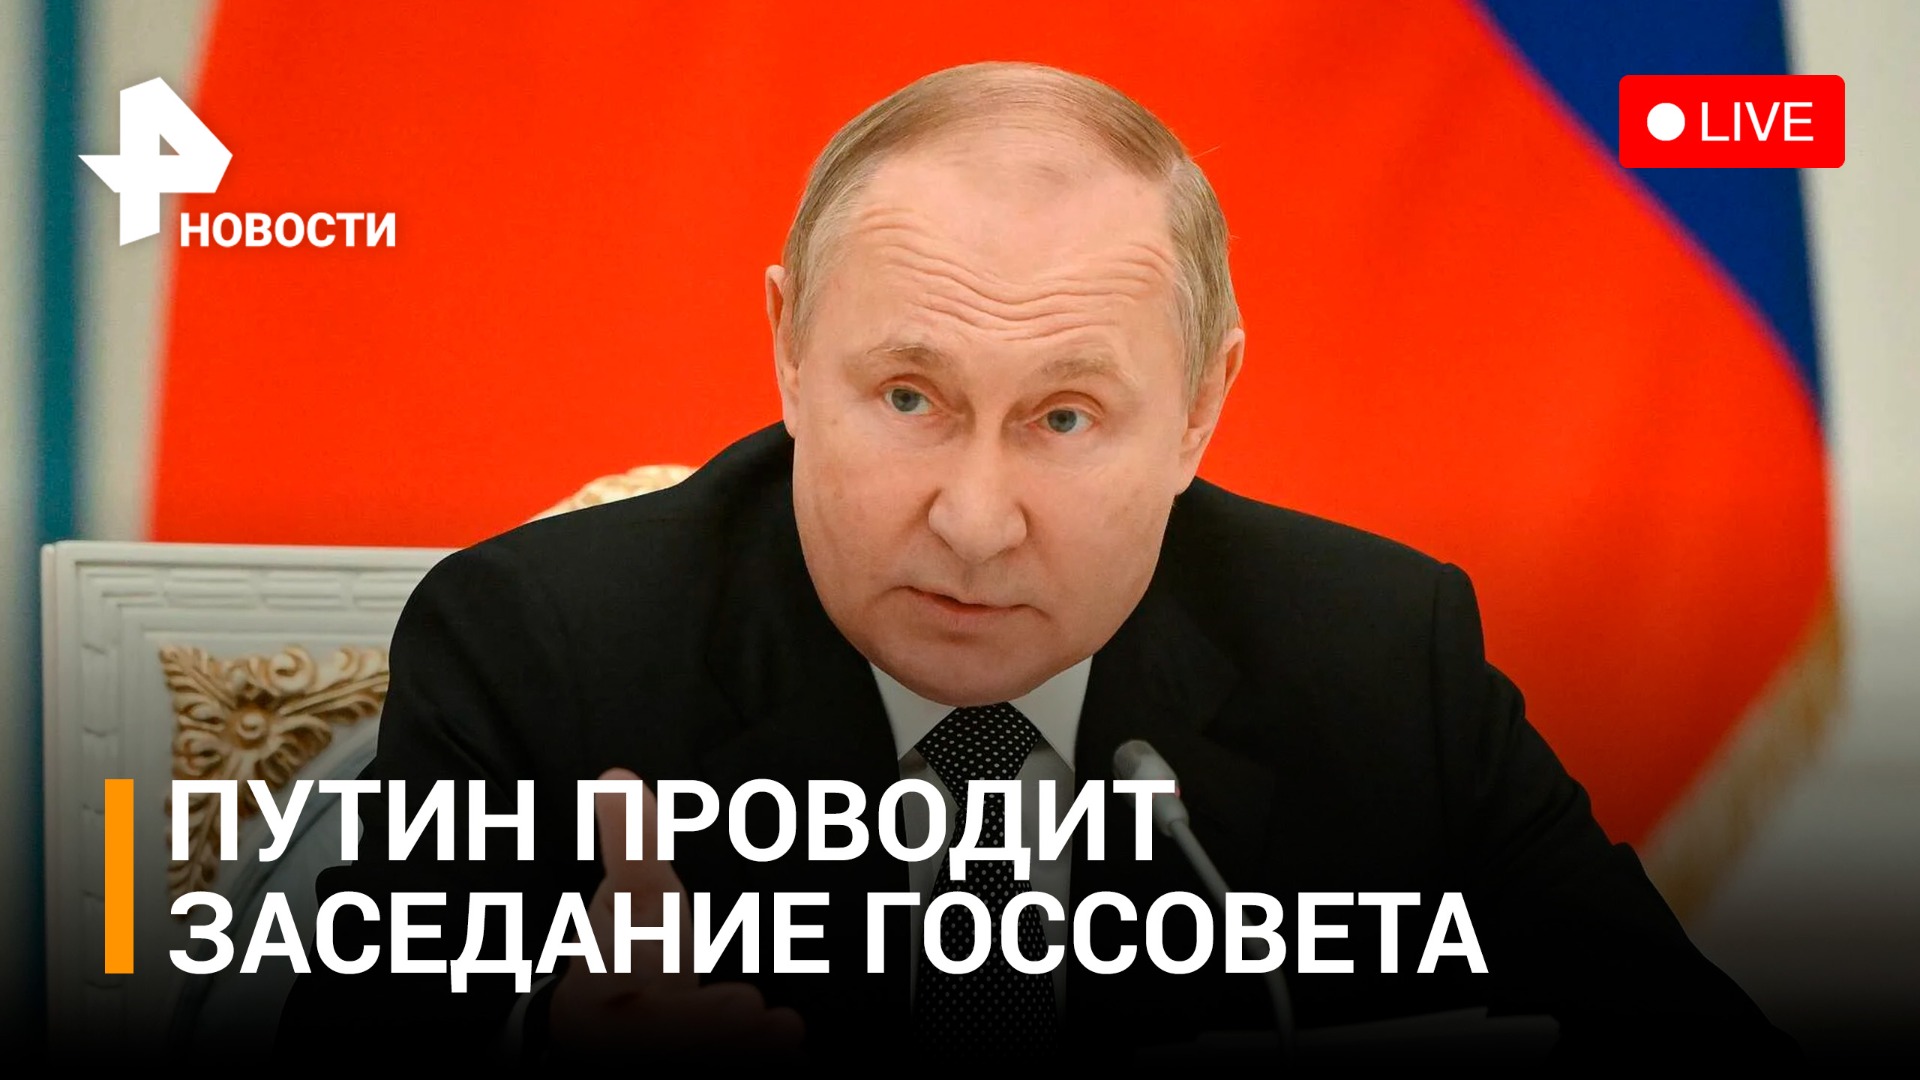 Владимир Путин выступает на заседании Государственного совета. ПРЯМОЙ ЭФИР / РЕН Новости 